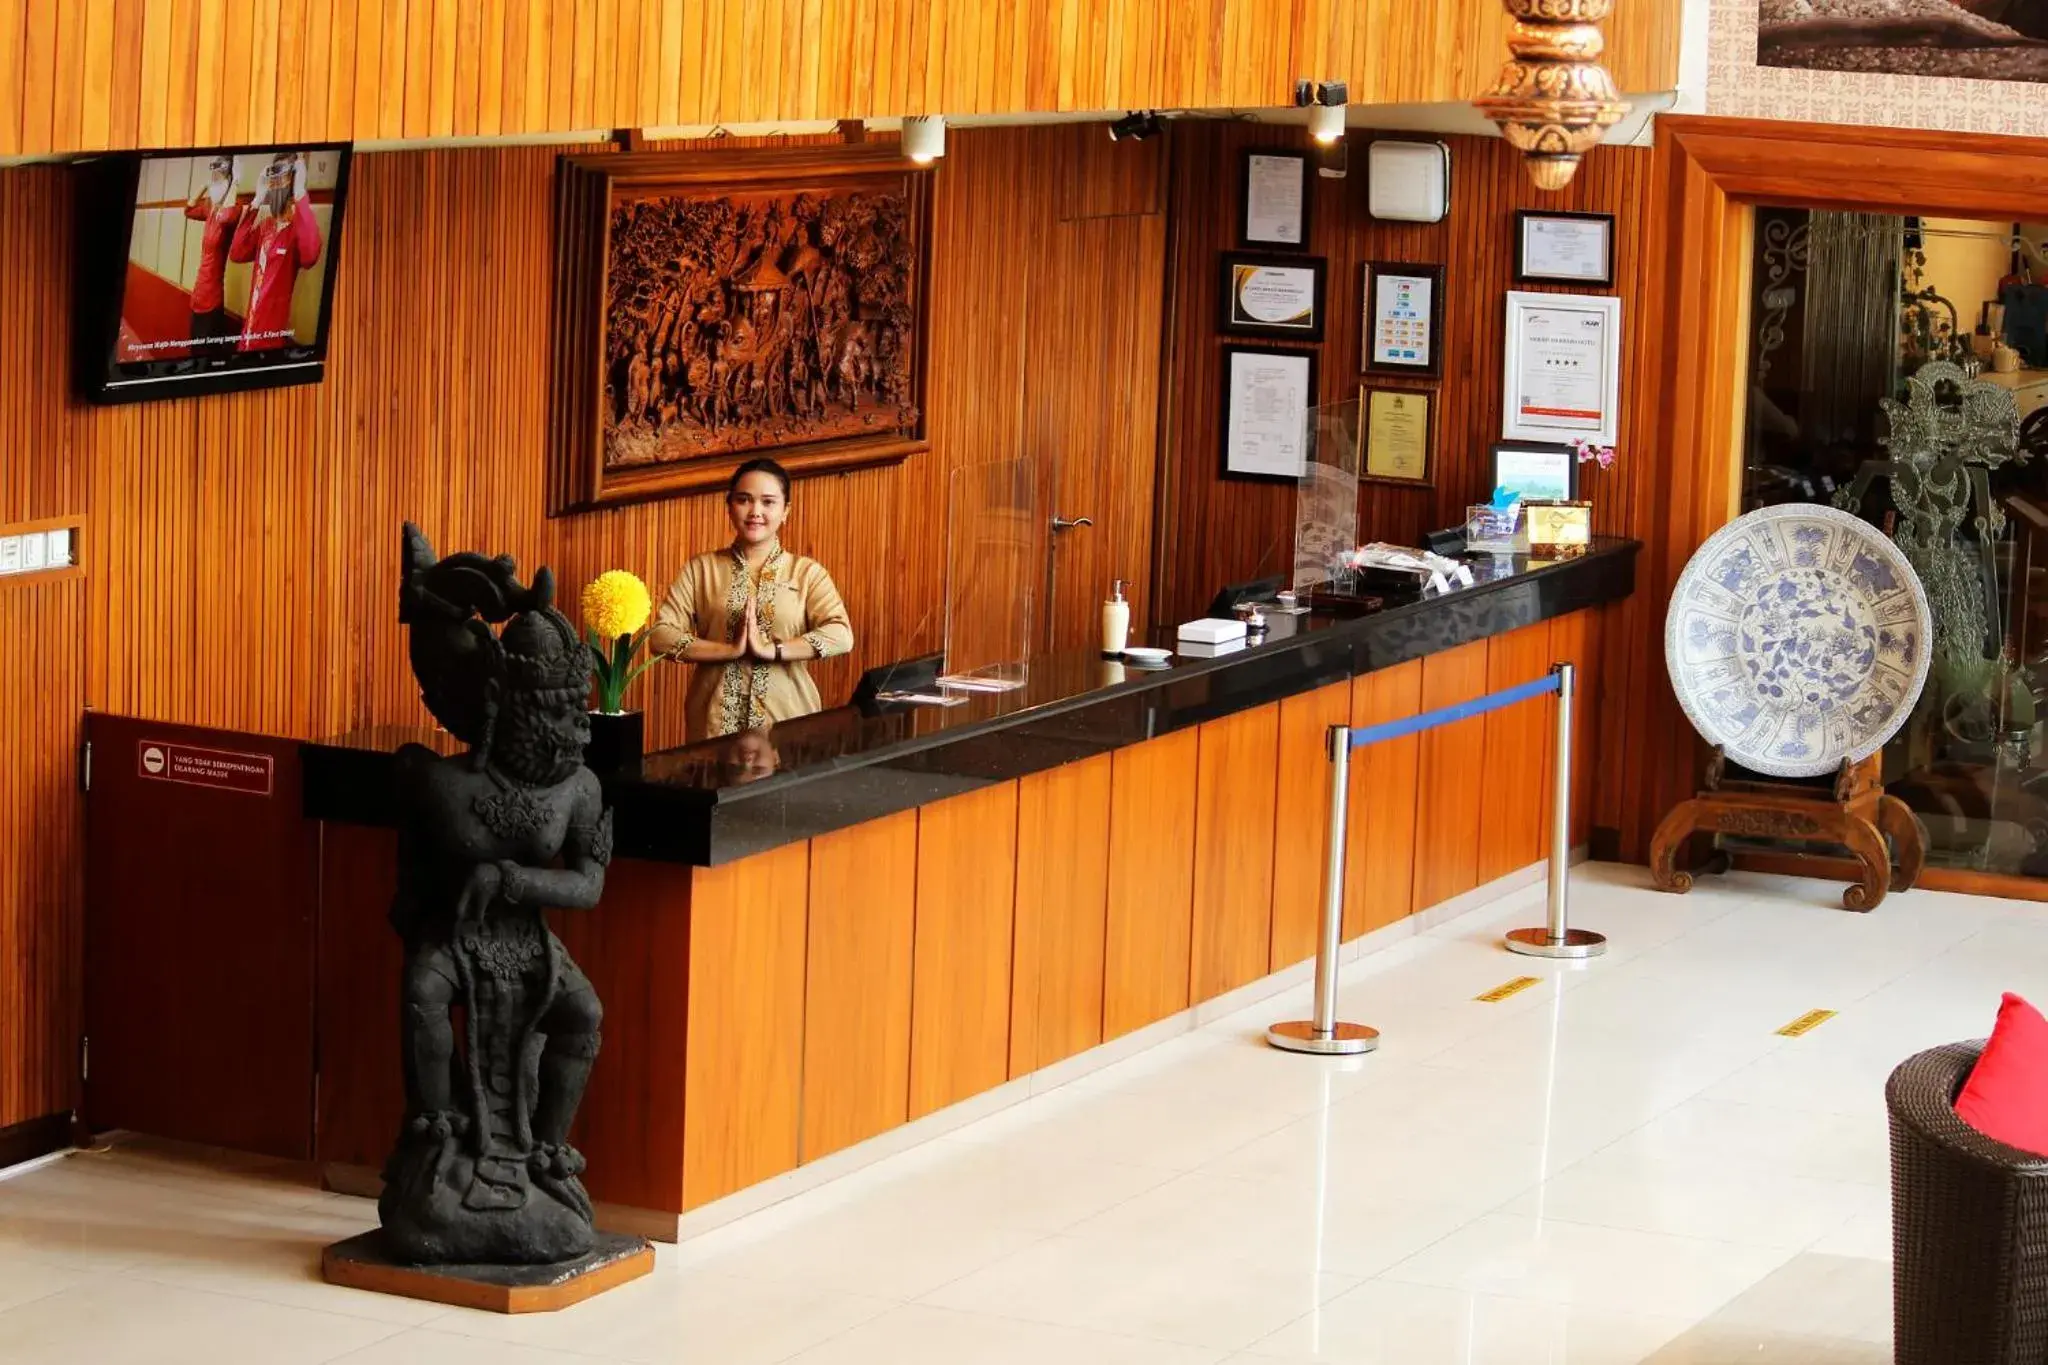 Lobby or reception in Merapi Merbabu Hotels